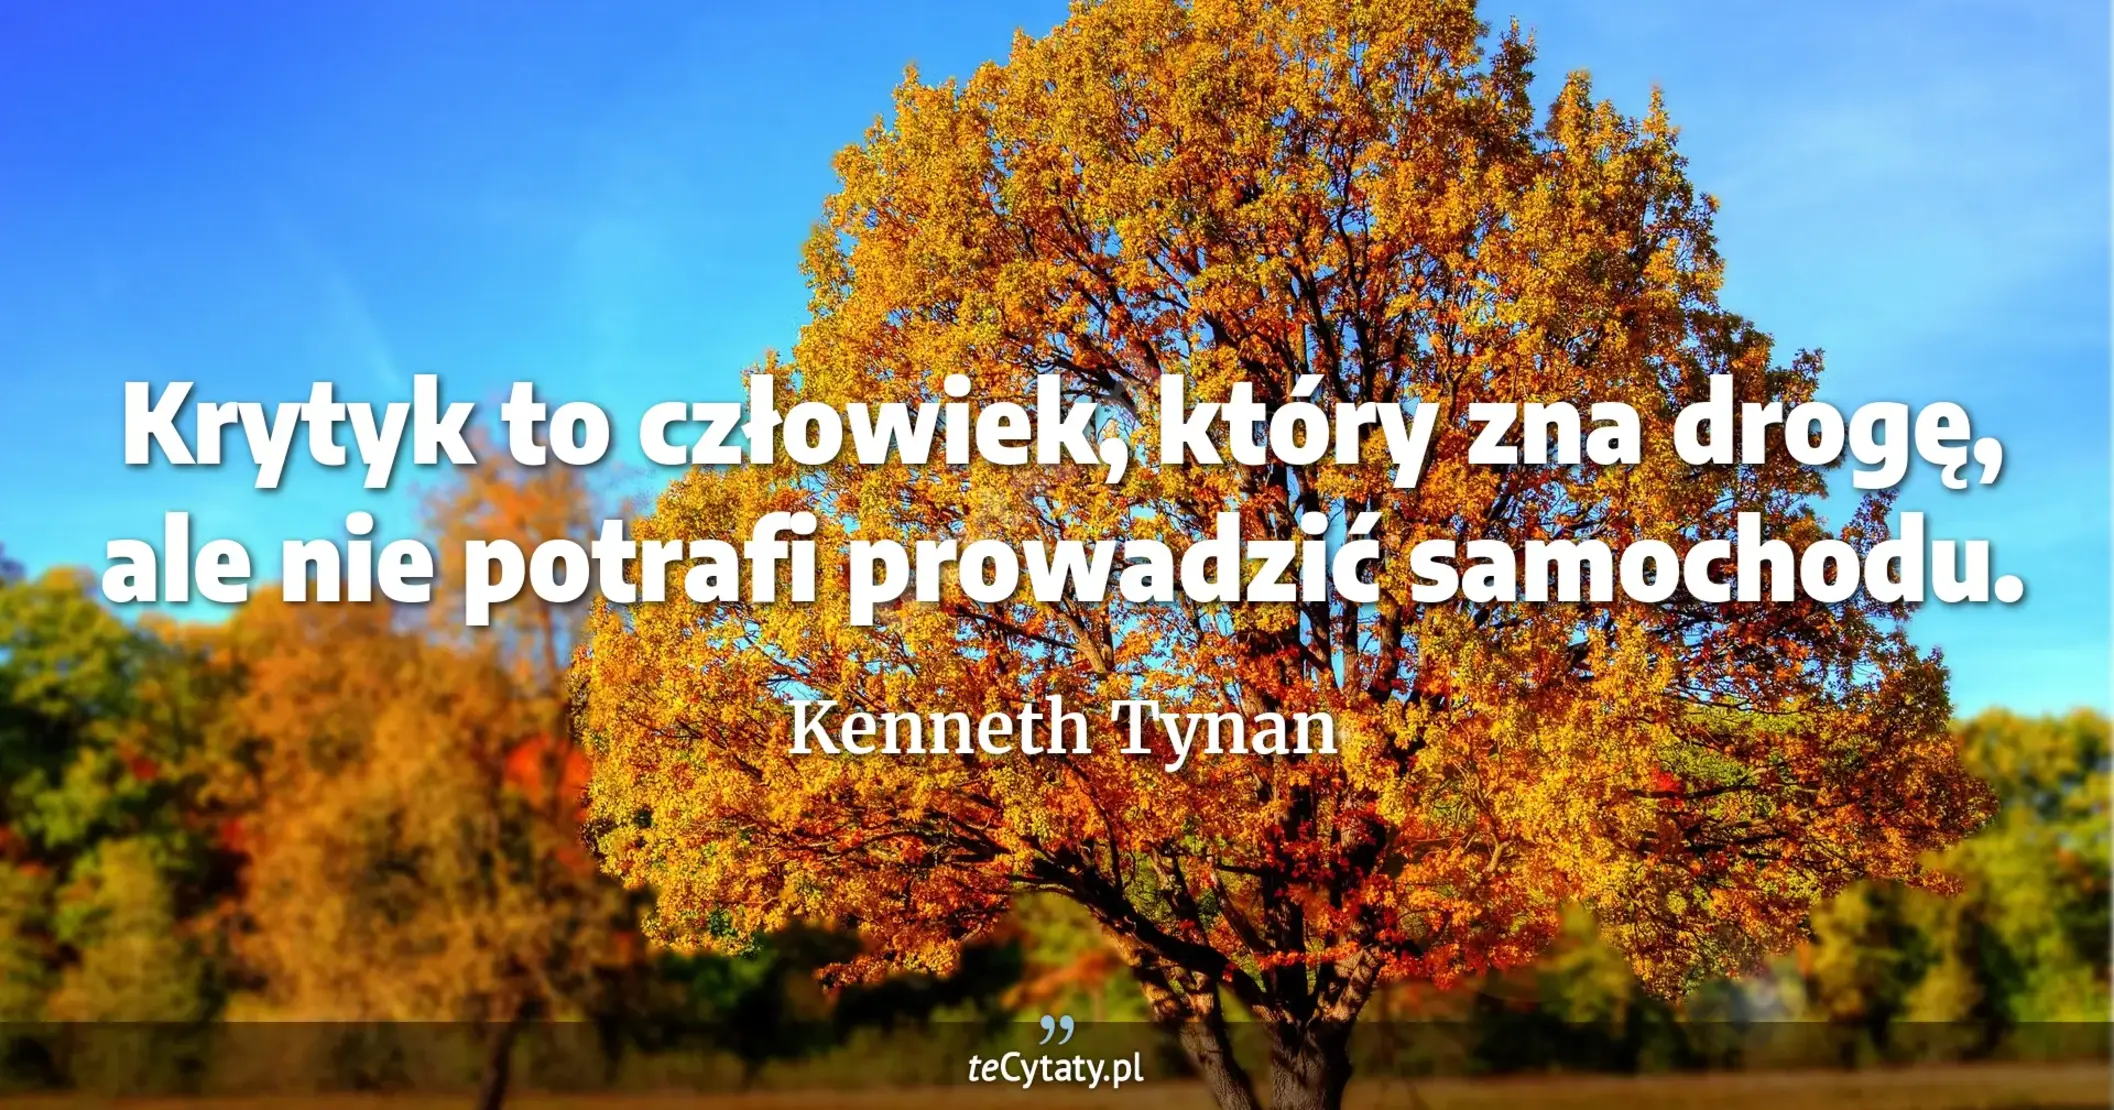 Krytyk to człowiek, który zna drogę, ale nie potrafi prowadzić samochodu. - Kenneth Tynan